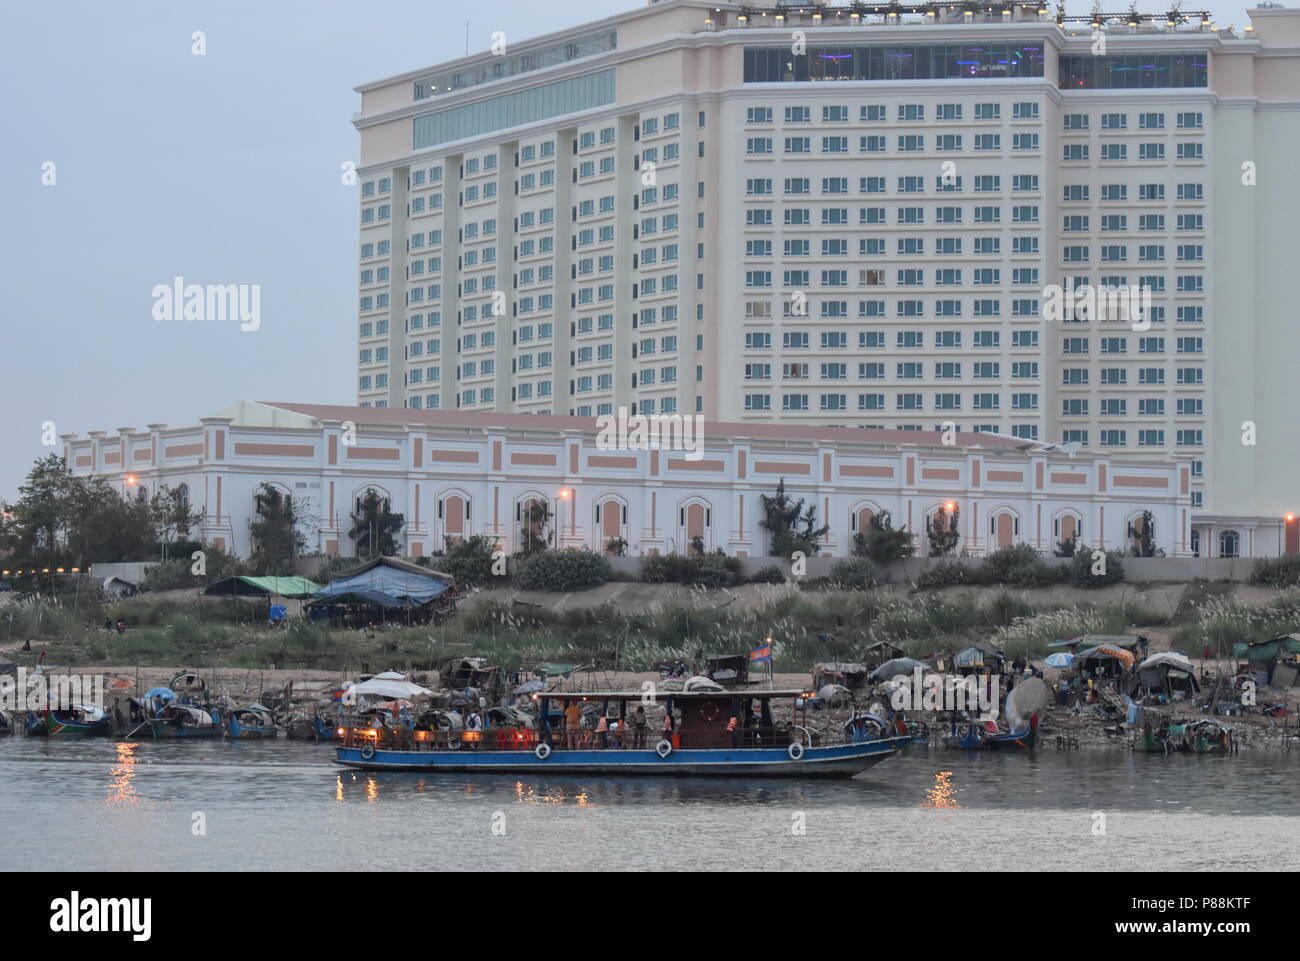 Contraste de hoteles de lujo y barcos de pesca y la pobreza de las minorías musulmanas a lo largo del río Mekong en Phnom Penh, Camboya Foto de stock